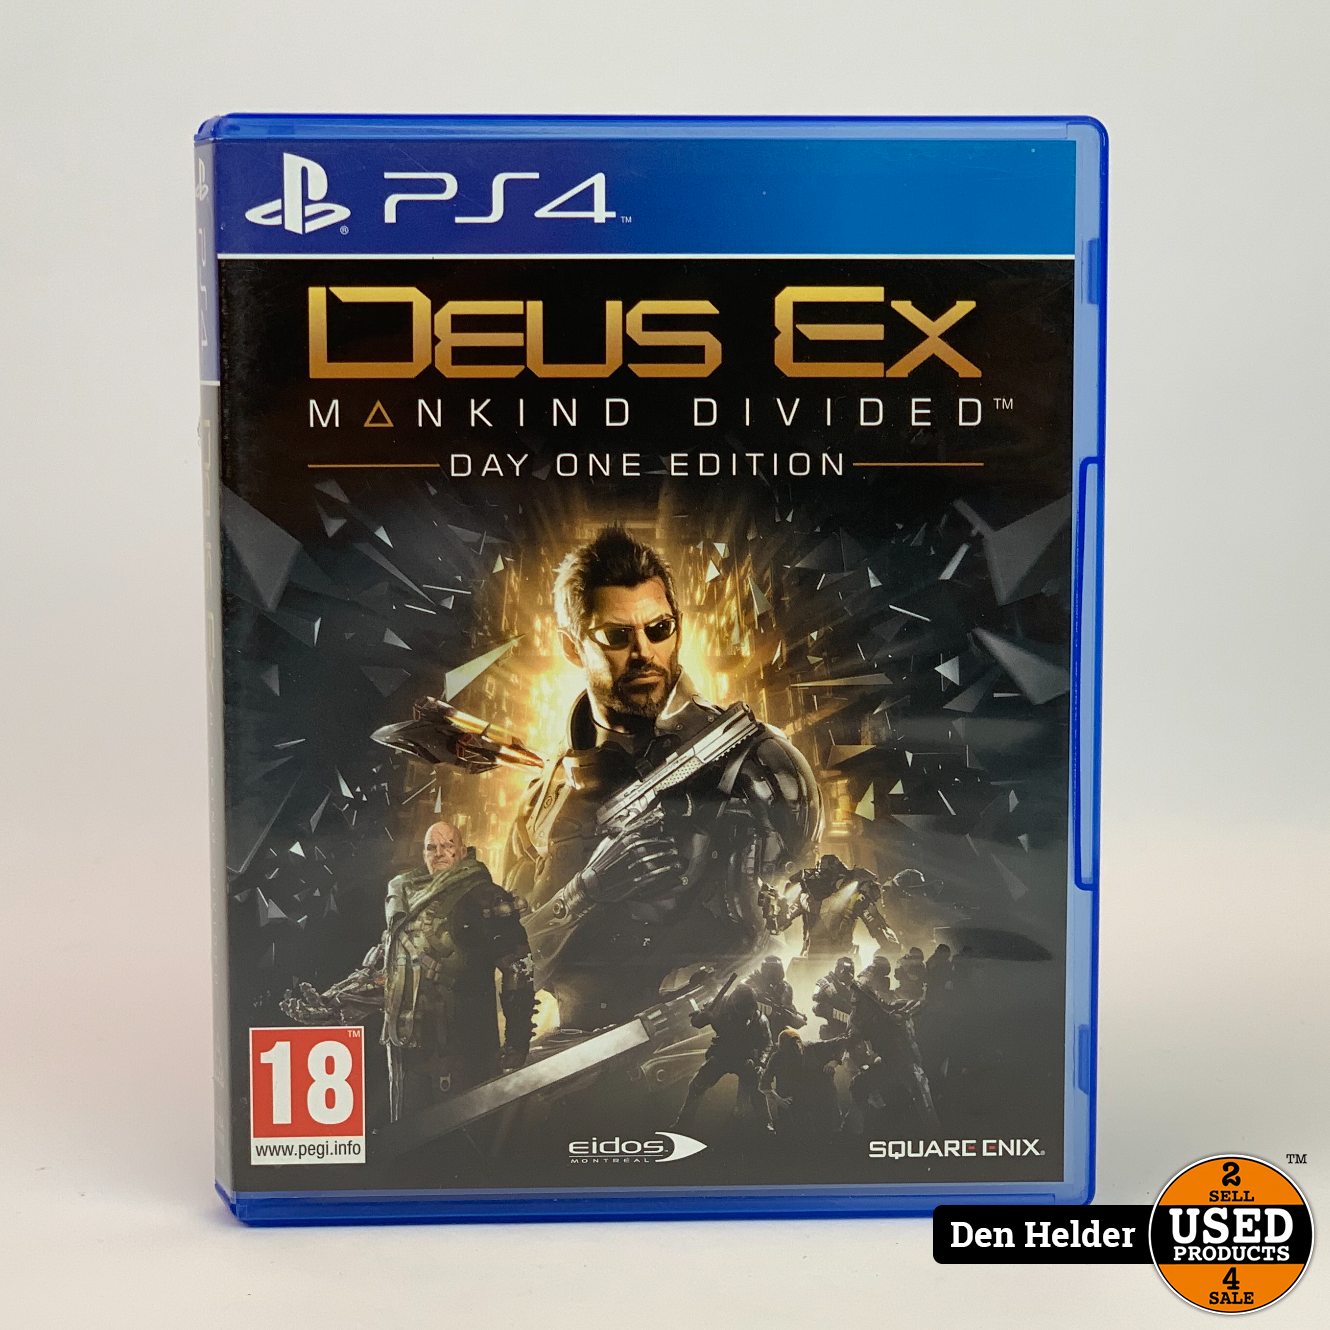 Onbeleefd dek storting Deus EX PS4 Game - In Nette Staat - Used Products Den Helder